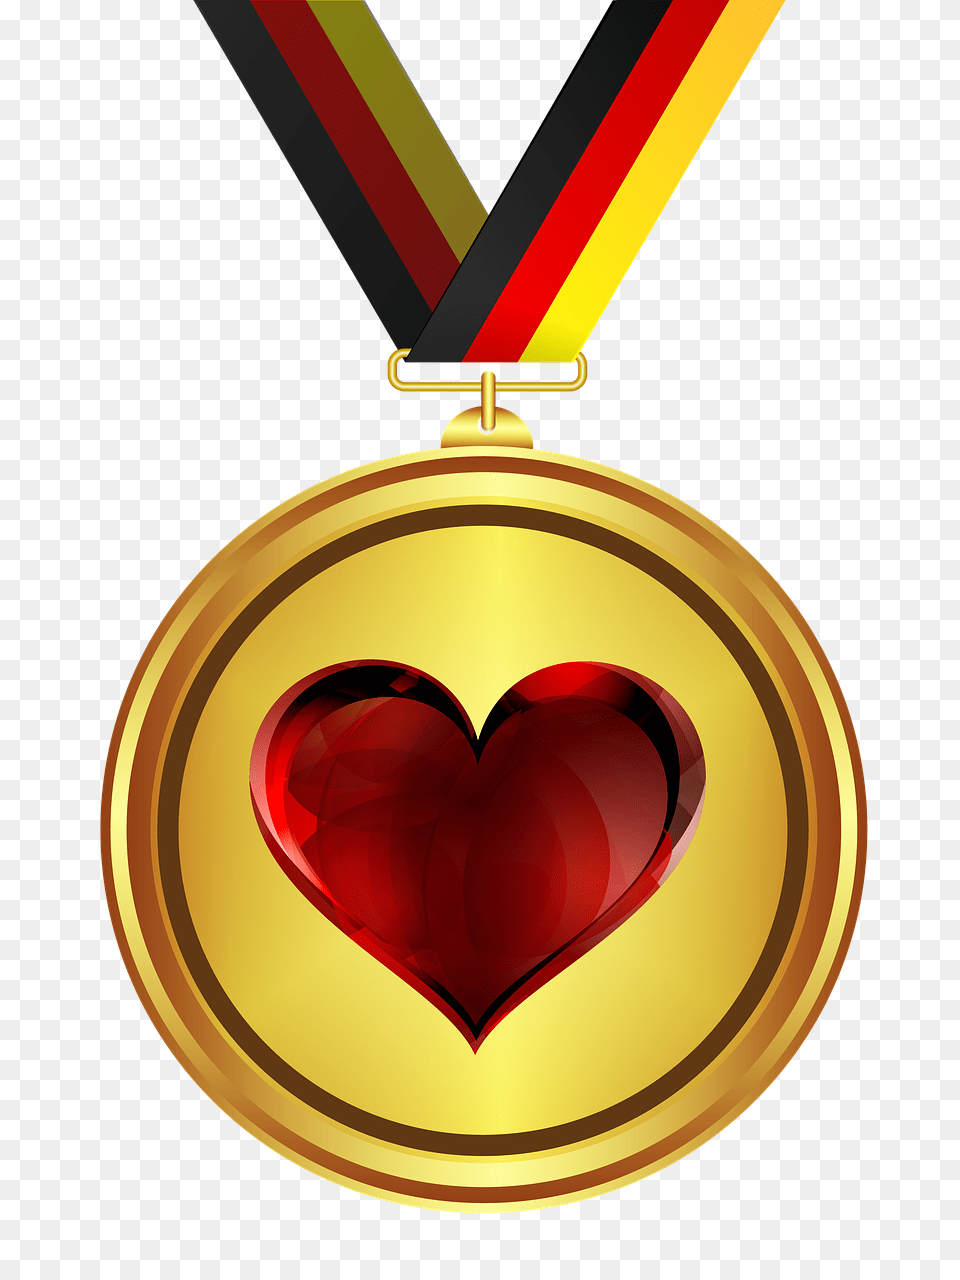 Medal Gold Tape Image On Pixabay Background Design For Medal, Gold Medal, Trophy Png